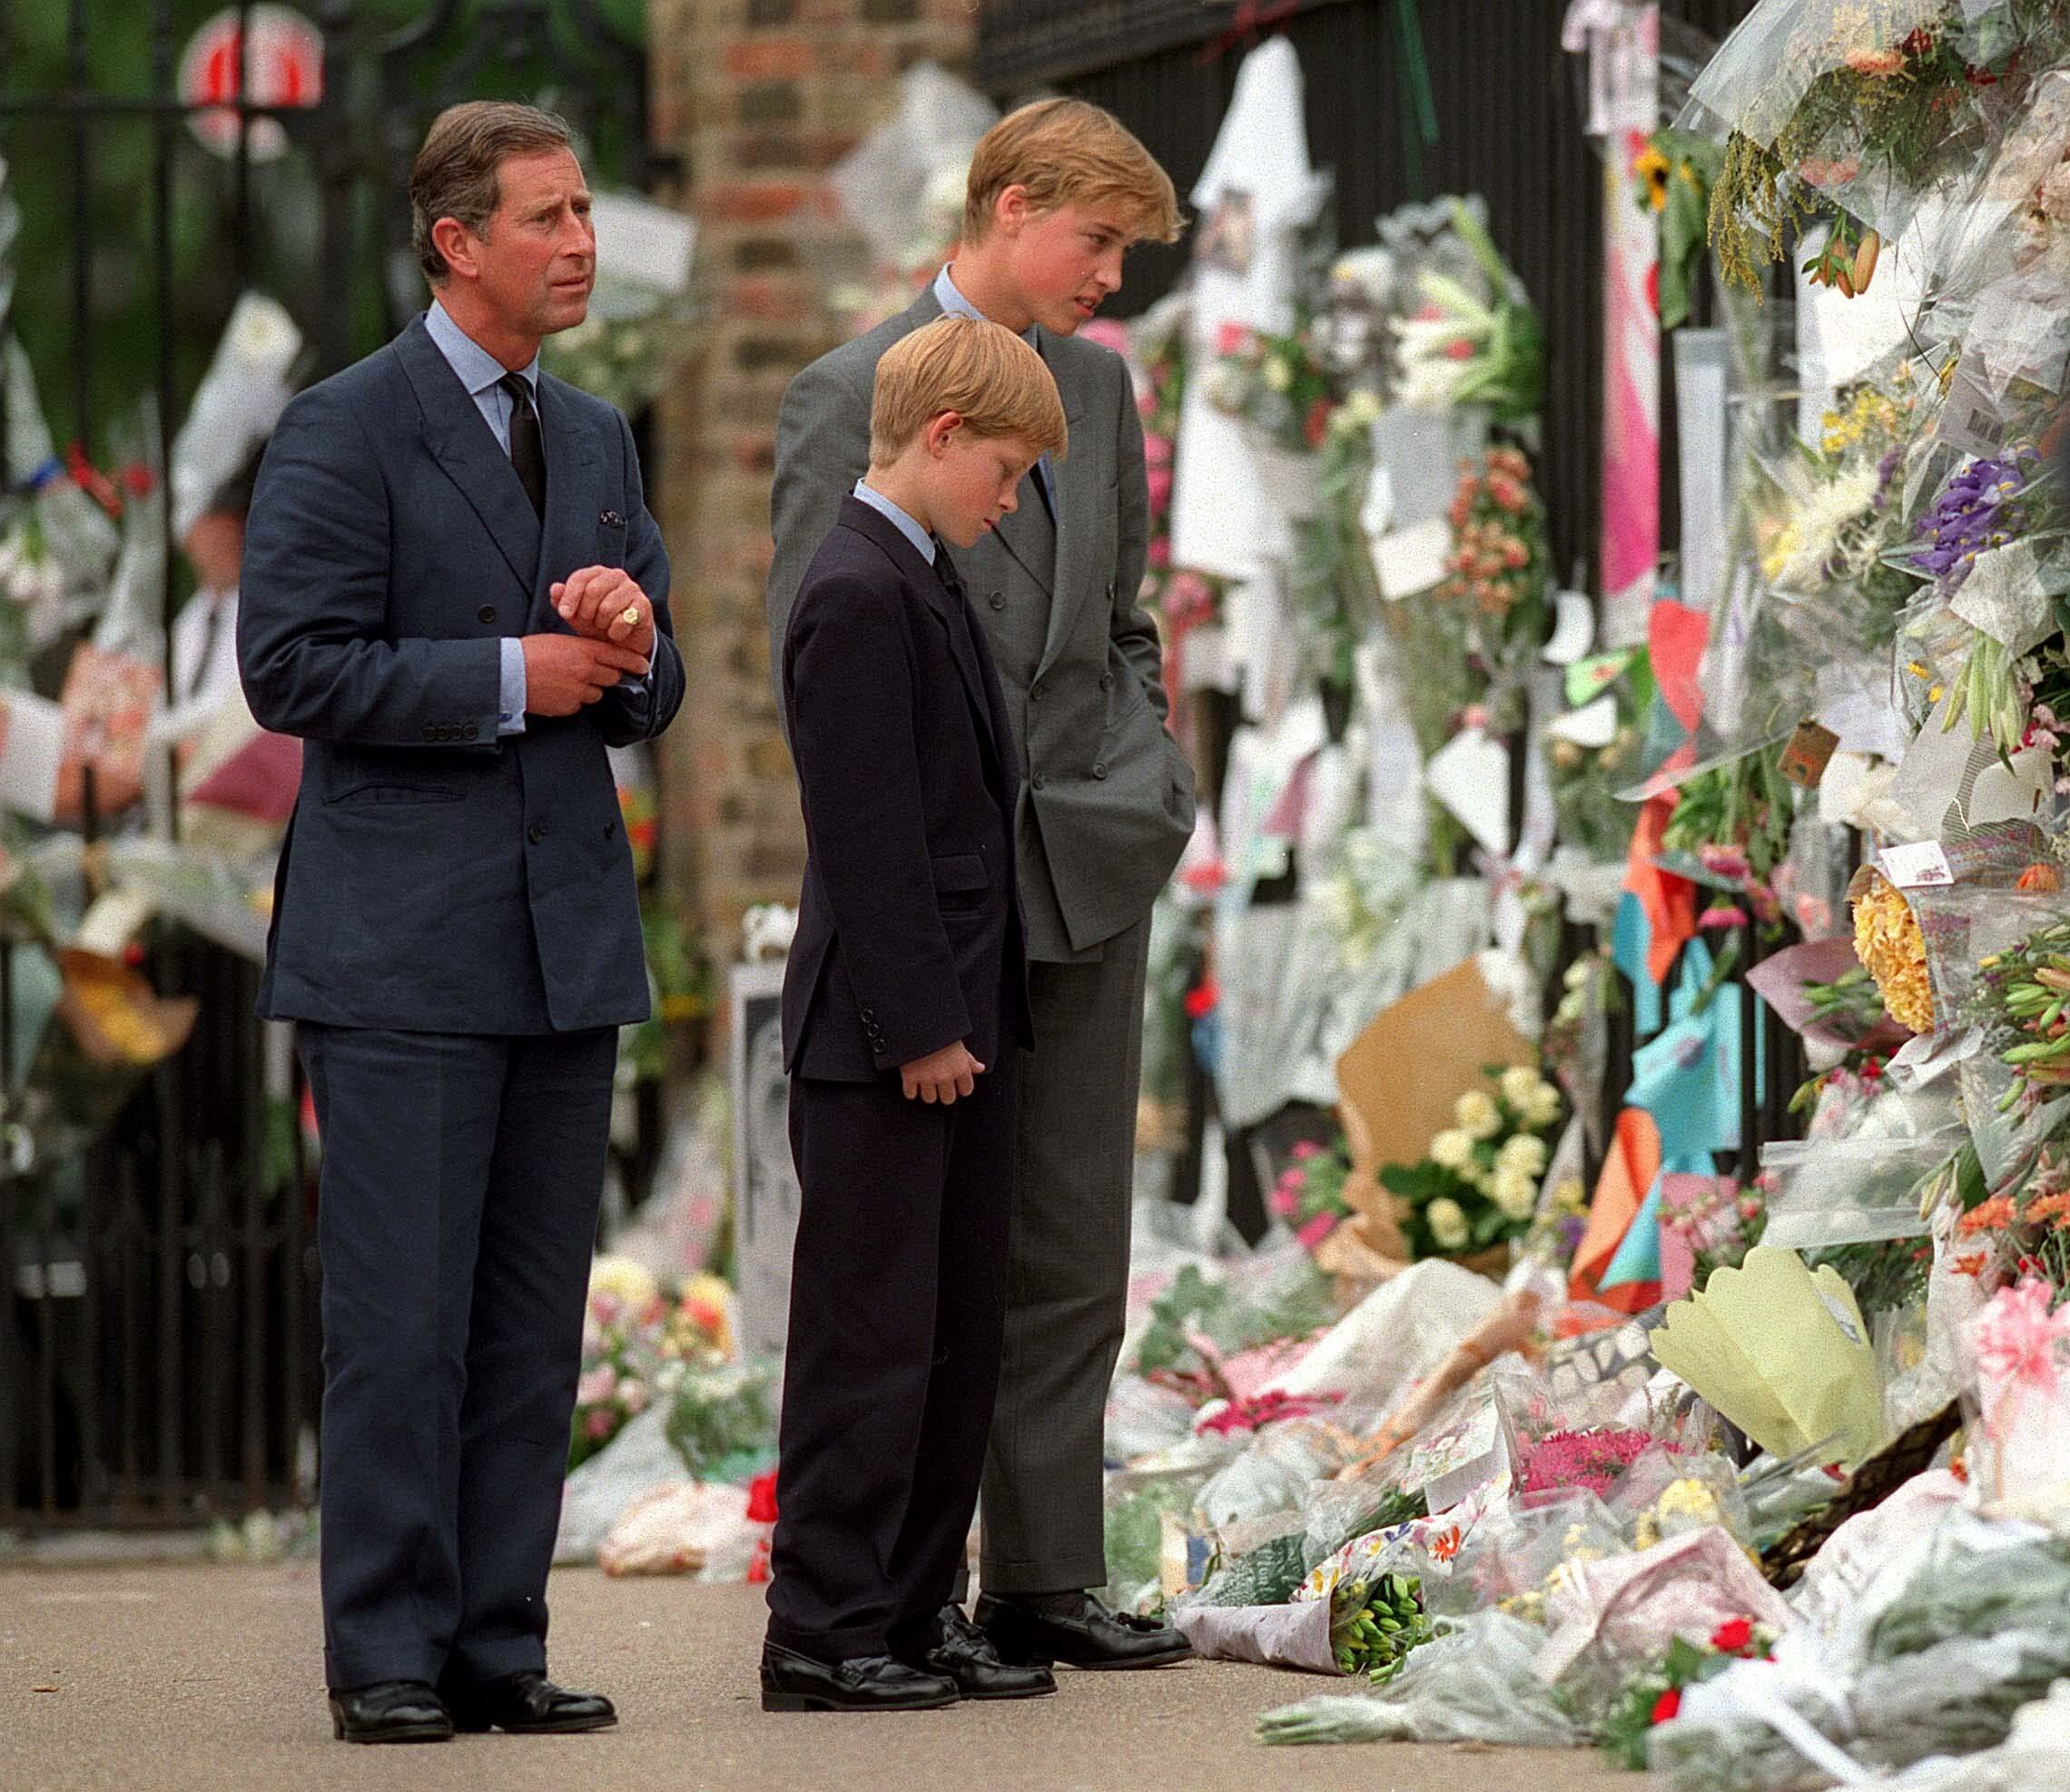 El príncipe de Gales, el príncipe William y el príncipe Harry observan los homenajes florales a Diana, fuera del Palacio de Kensington el 5 de septiembre de 1997 en Londres, Inglaterra. | Foto: Getty Images